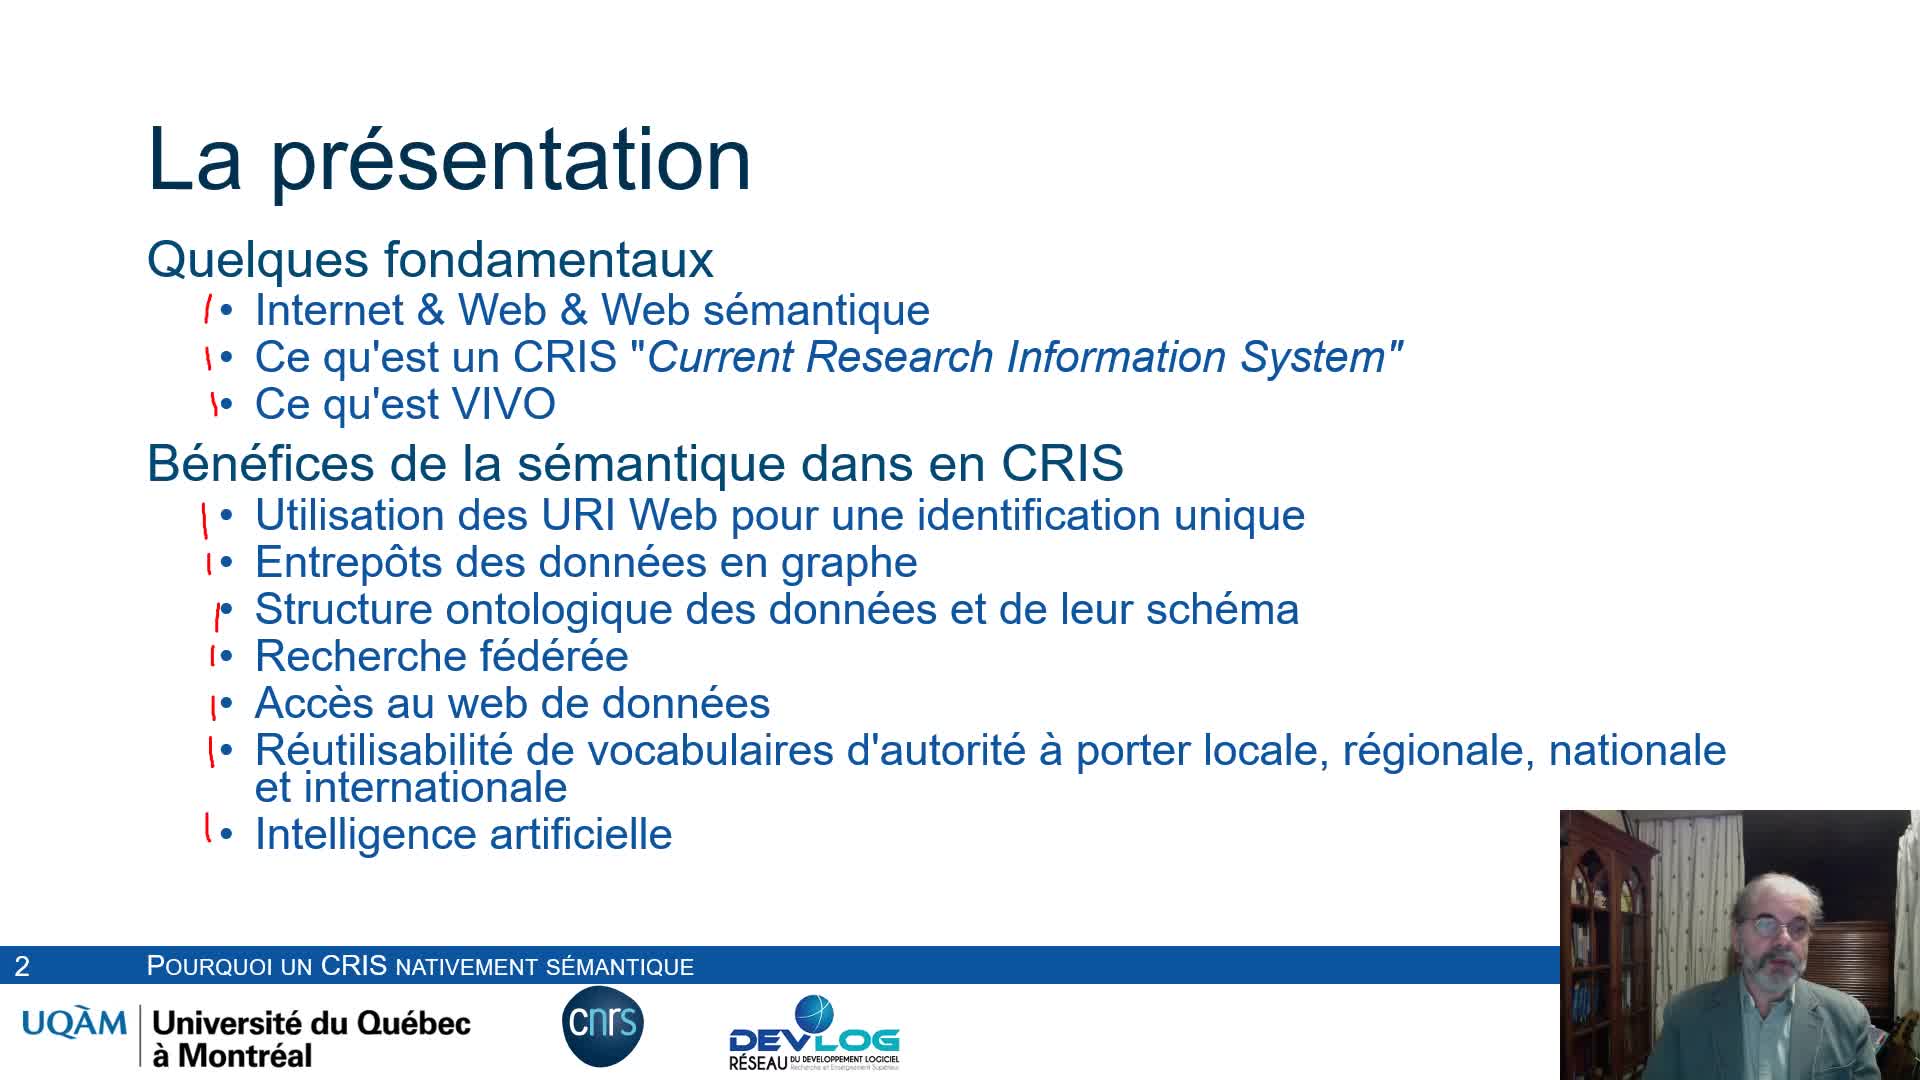 Pourquoi un CRIS (Current Research Information System) nativement sémantique?